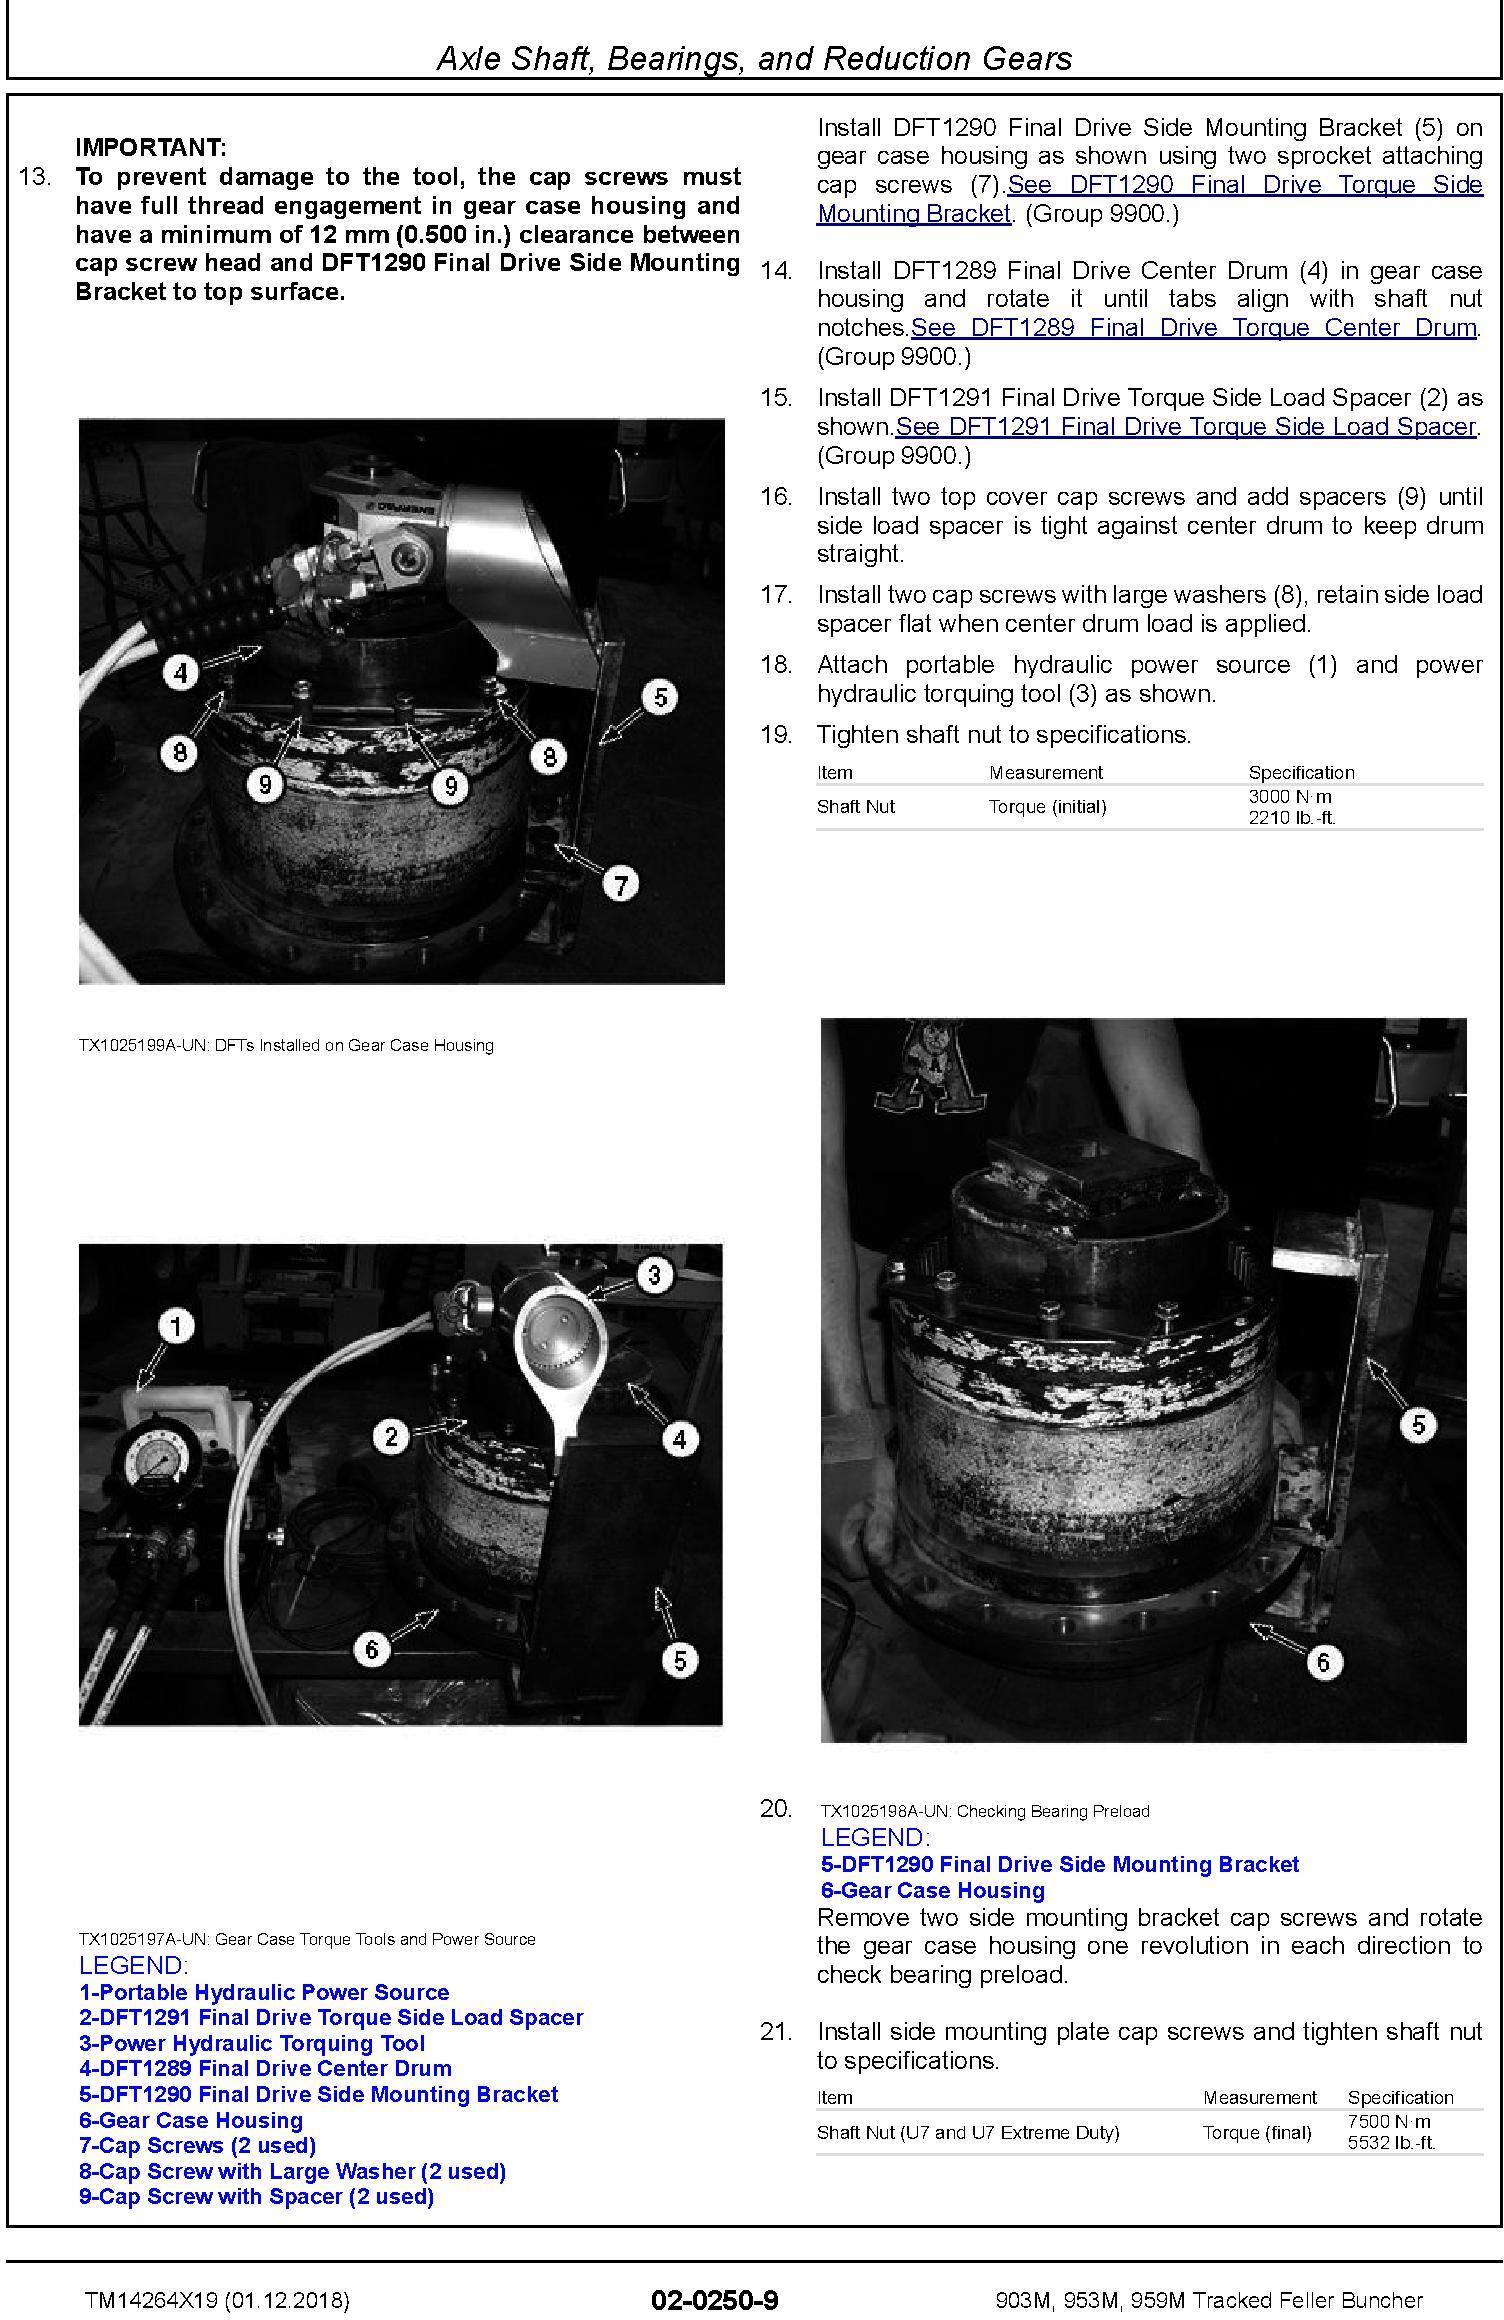 John Deere 903M, 953M, 959M (SN.C317982-,D317982-) Tracked Feller Buncher Repair Manual (TM14264X19) - 2